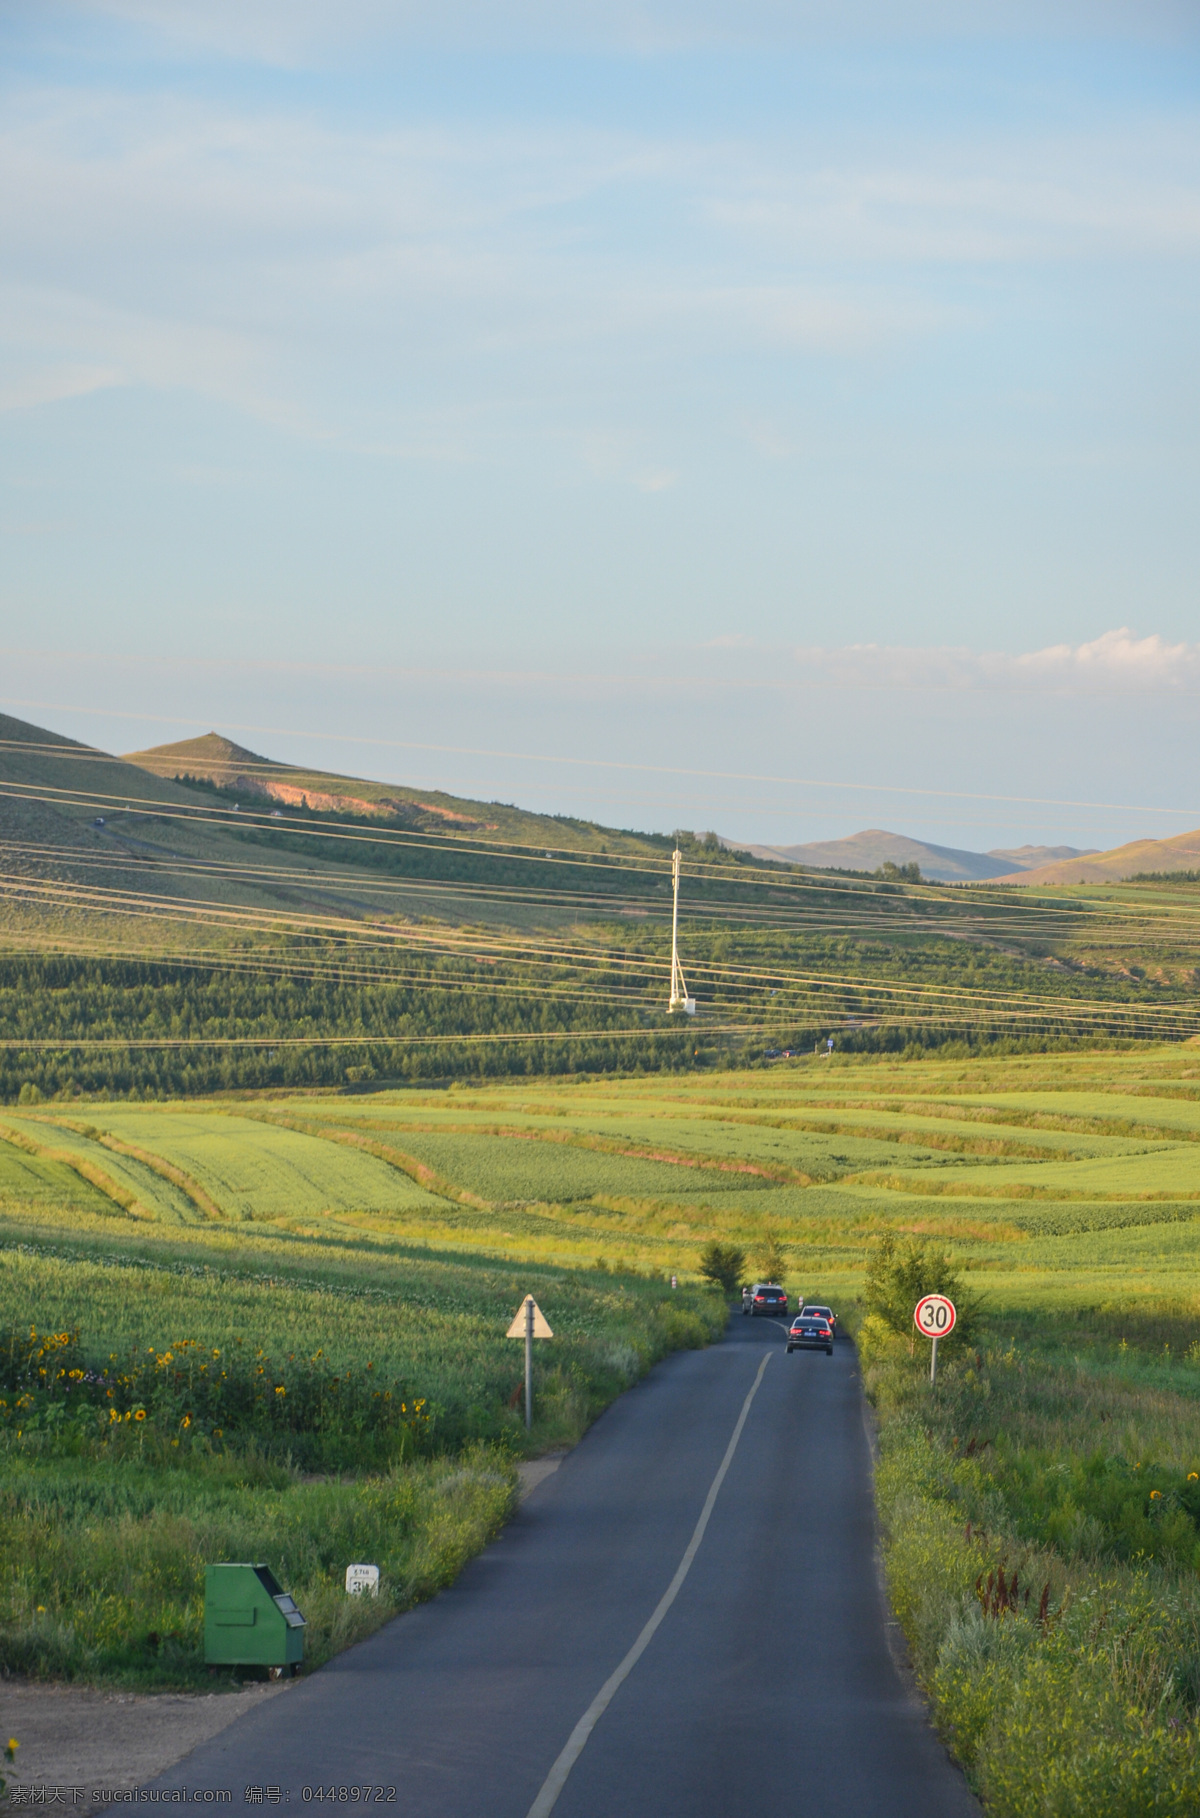 草原天路 草原 公路 自然风光 远方 竖版 手机壁纸 草原风光 自然景观 自然风景